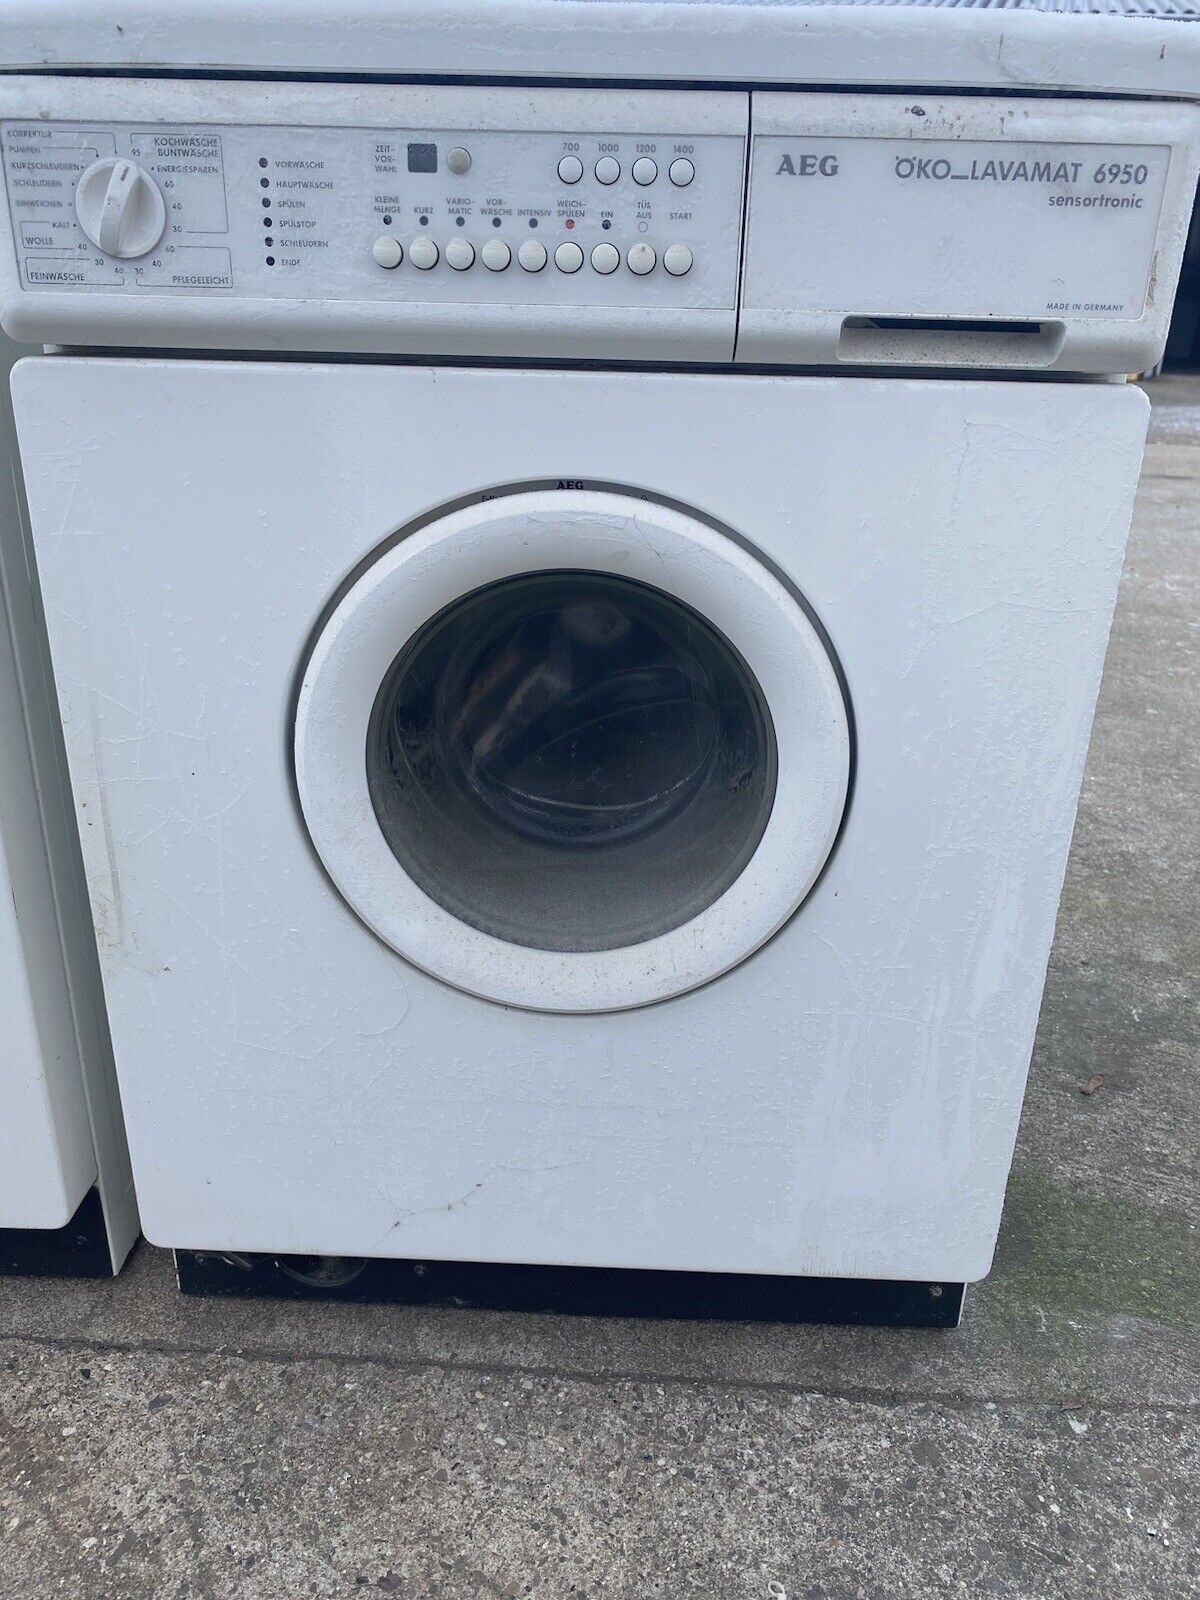 AEG Waschmaschine zu verschenken in 9232 Rosegg für gratis zum